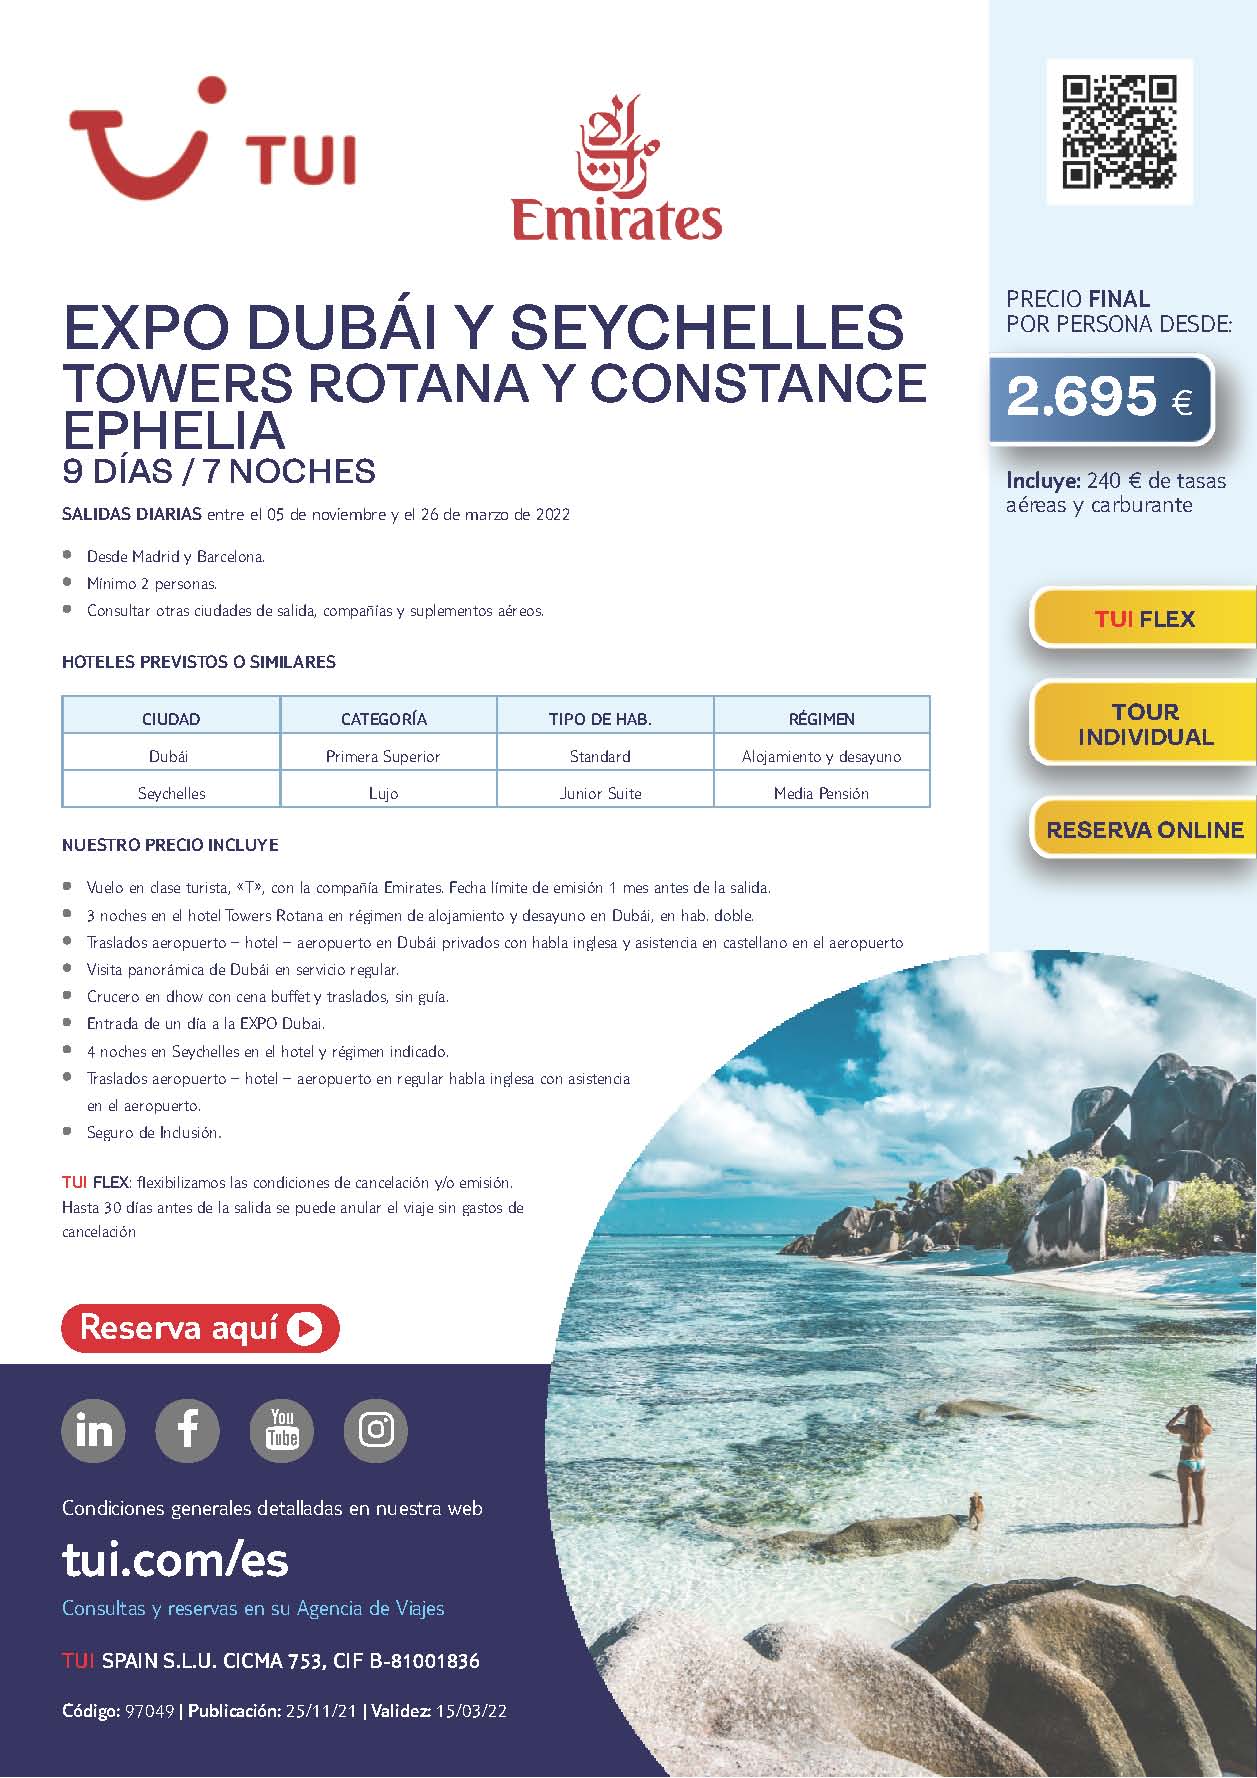 Oferta TUI Expo Dubai y Seychelles Towers Rotana y Constance Ephelia vuelos Emirates Febrero y Marzo 2022 salidas desde Madrid y Barcelona